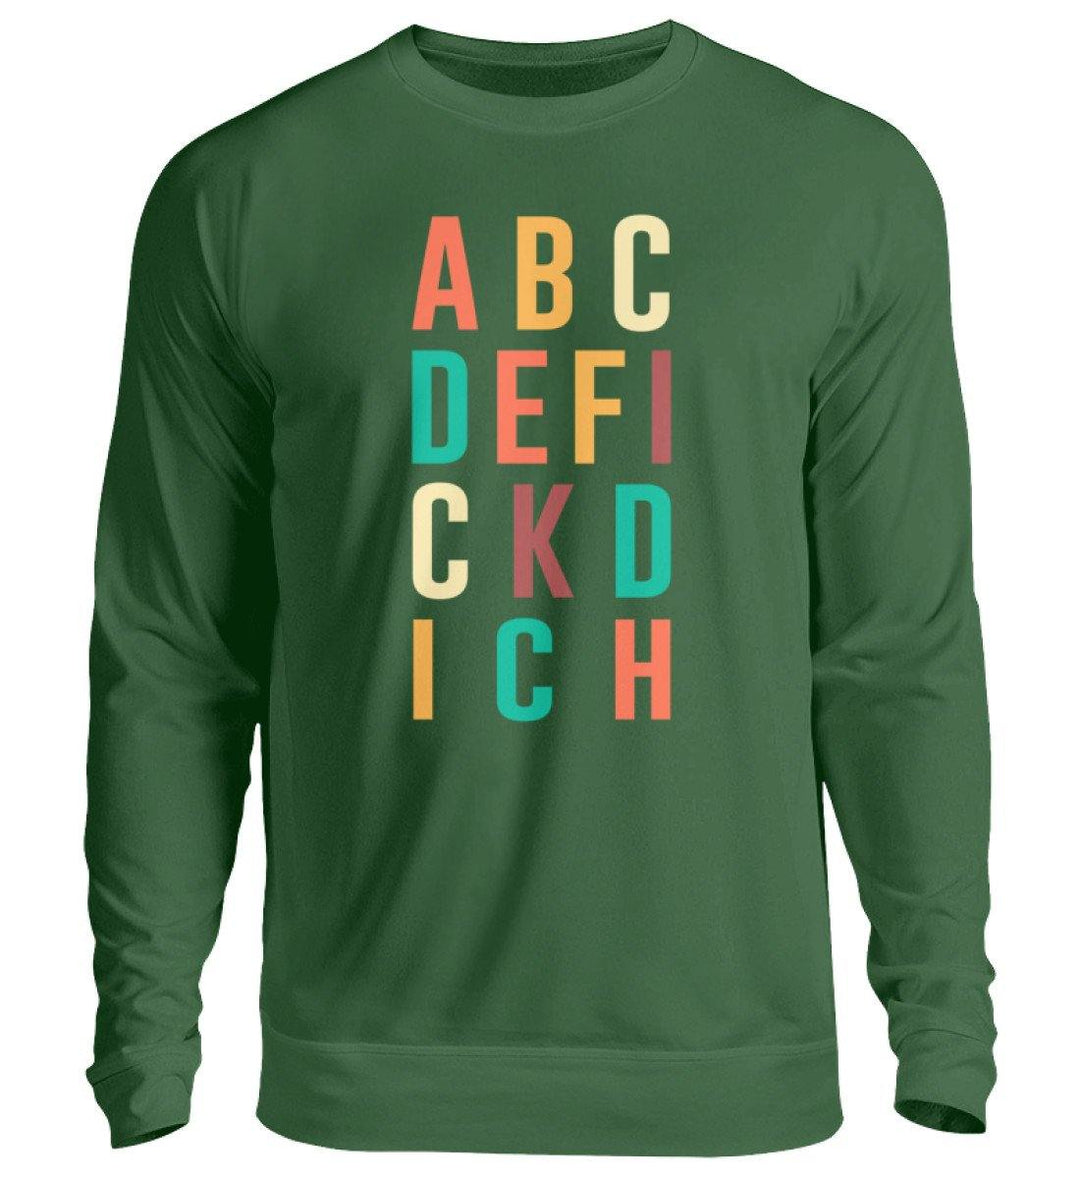 ABCDEFICKDICH - Words on Shirts  - Unisex Pullover - Words on Shirts Sag es mit dem Mittelfinger Shirts Hoodies Sweatshirt Taschen Gymsack Spruch Sprüche Statement